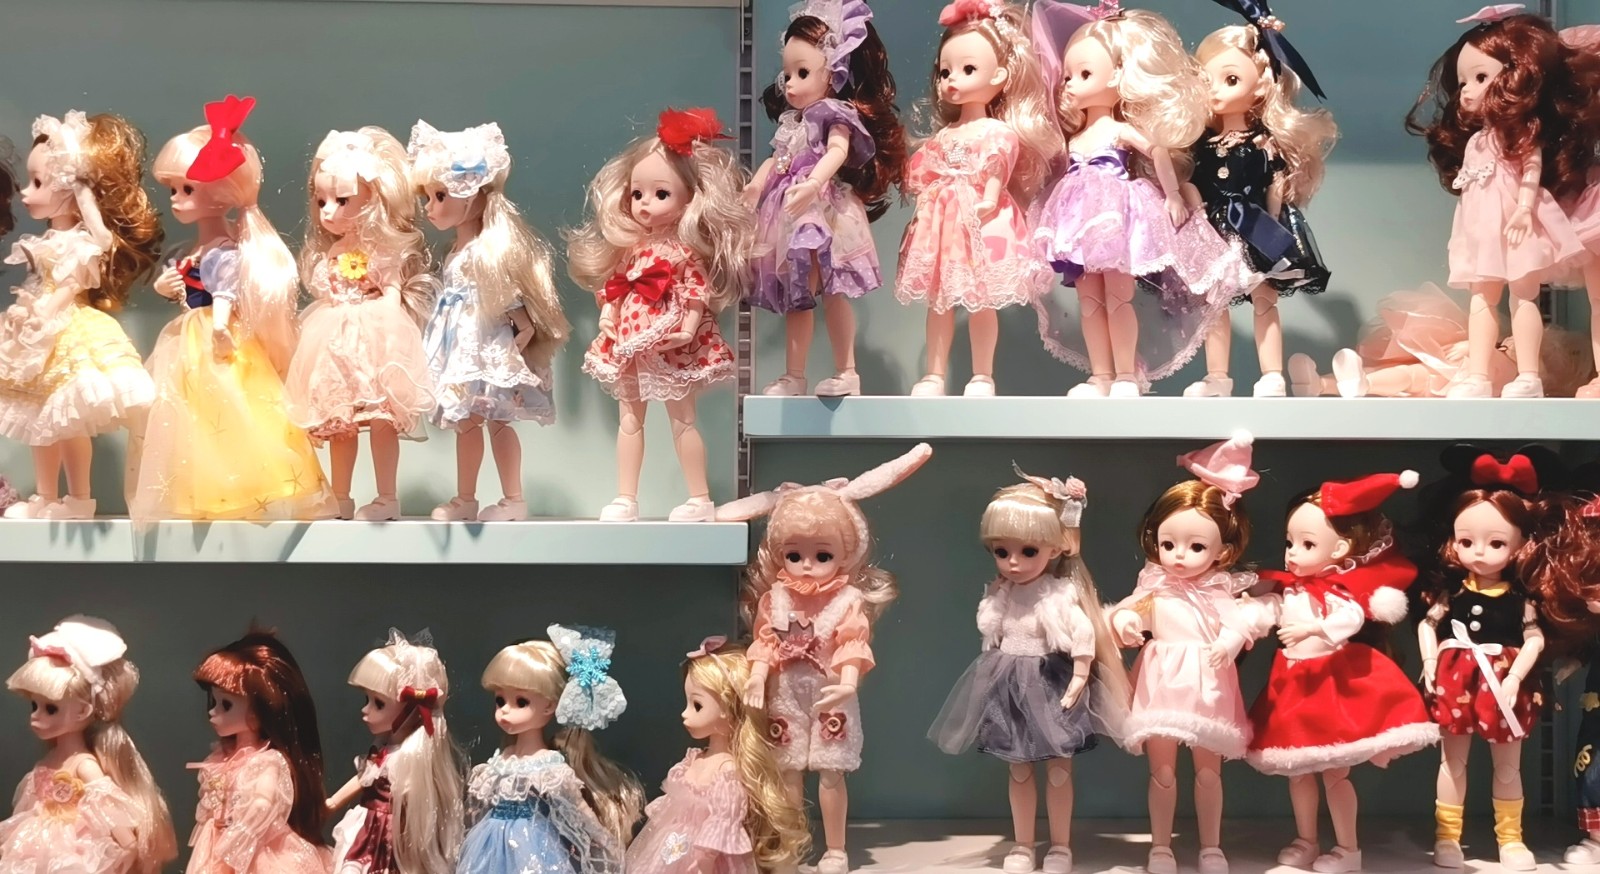 义乌市熙笑果丁文化创意有限公司批发挡搪塑胶芭比娃娃、肥童娃娃等玩具产品